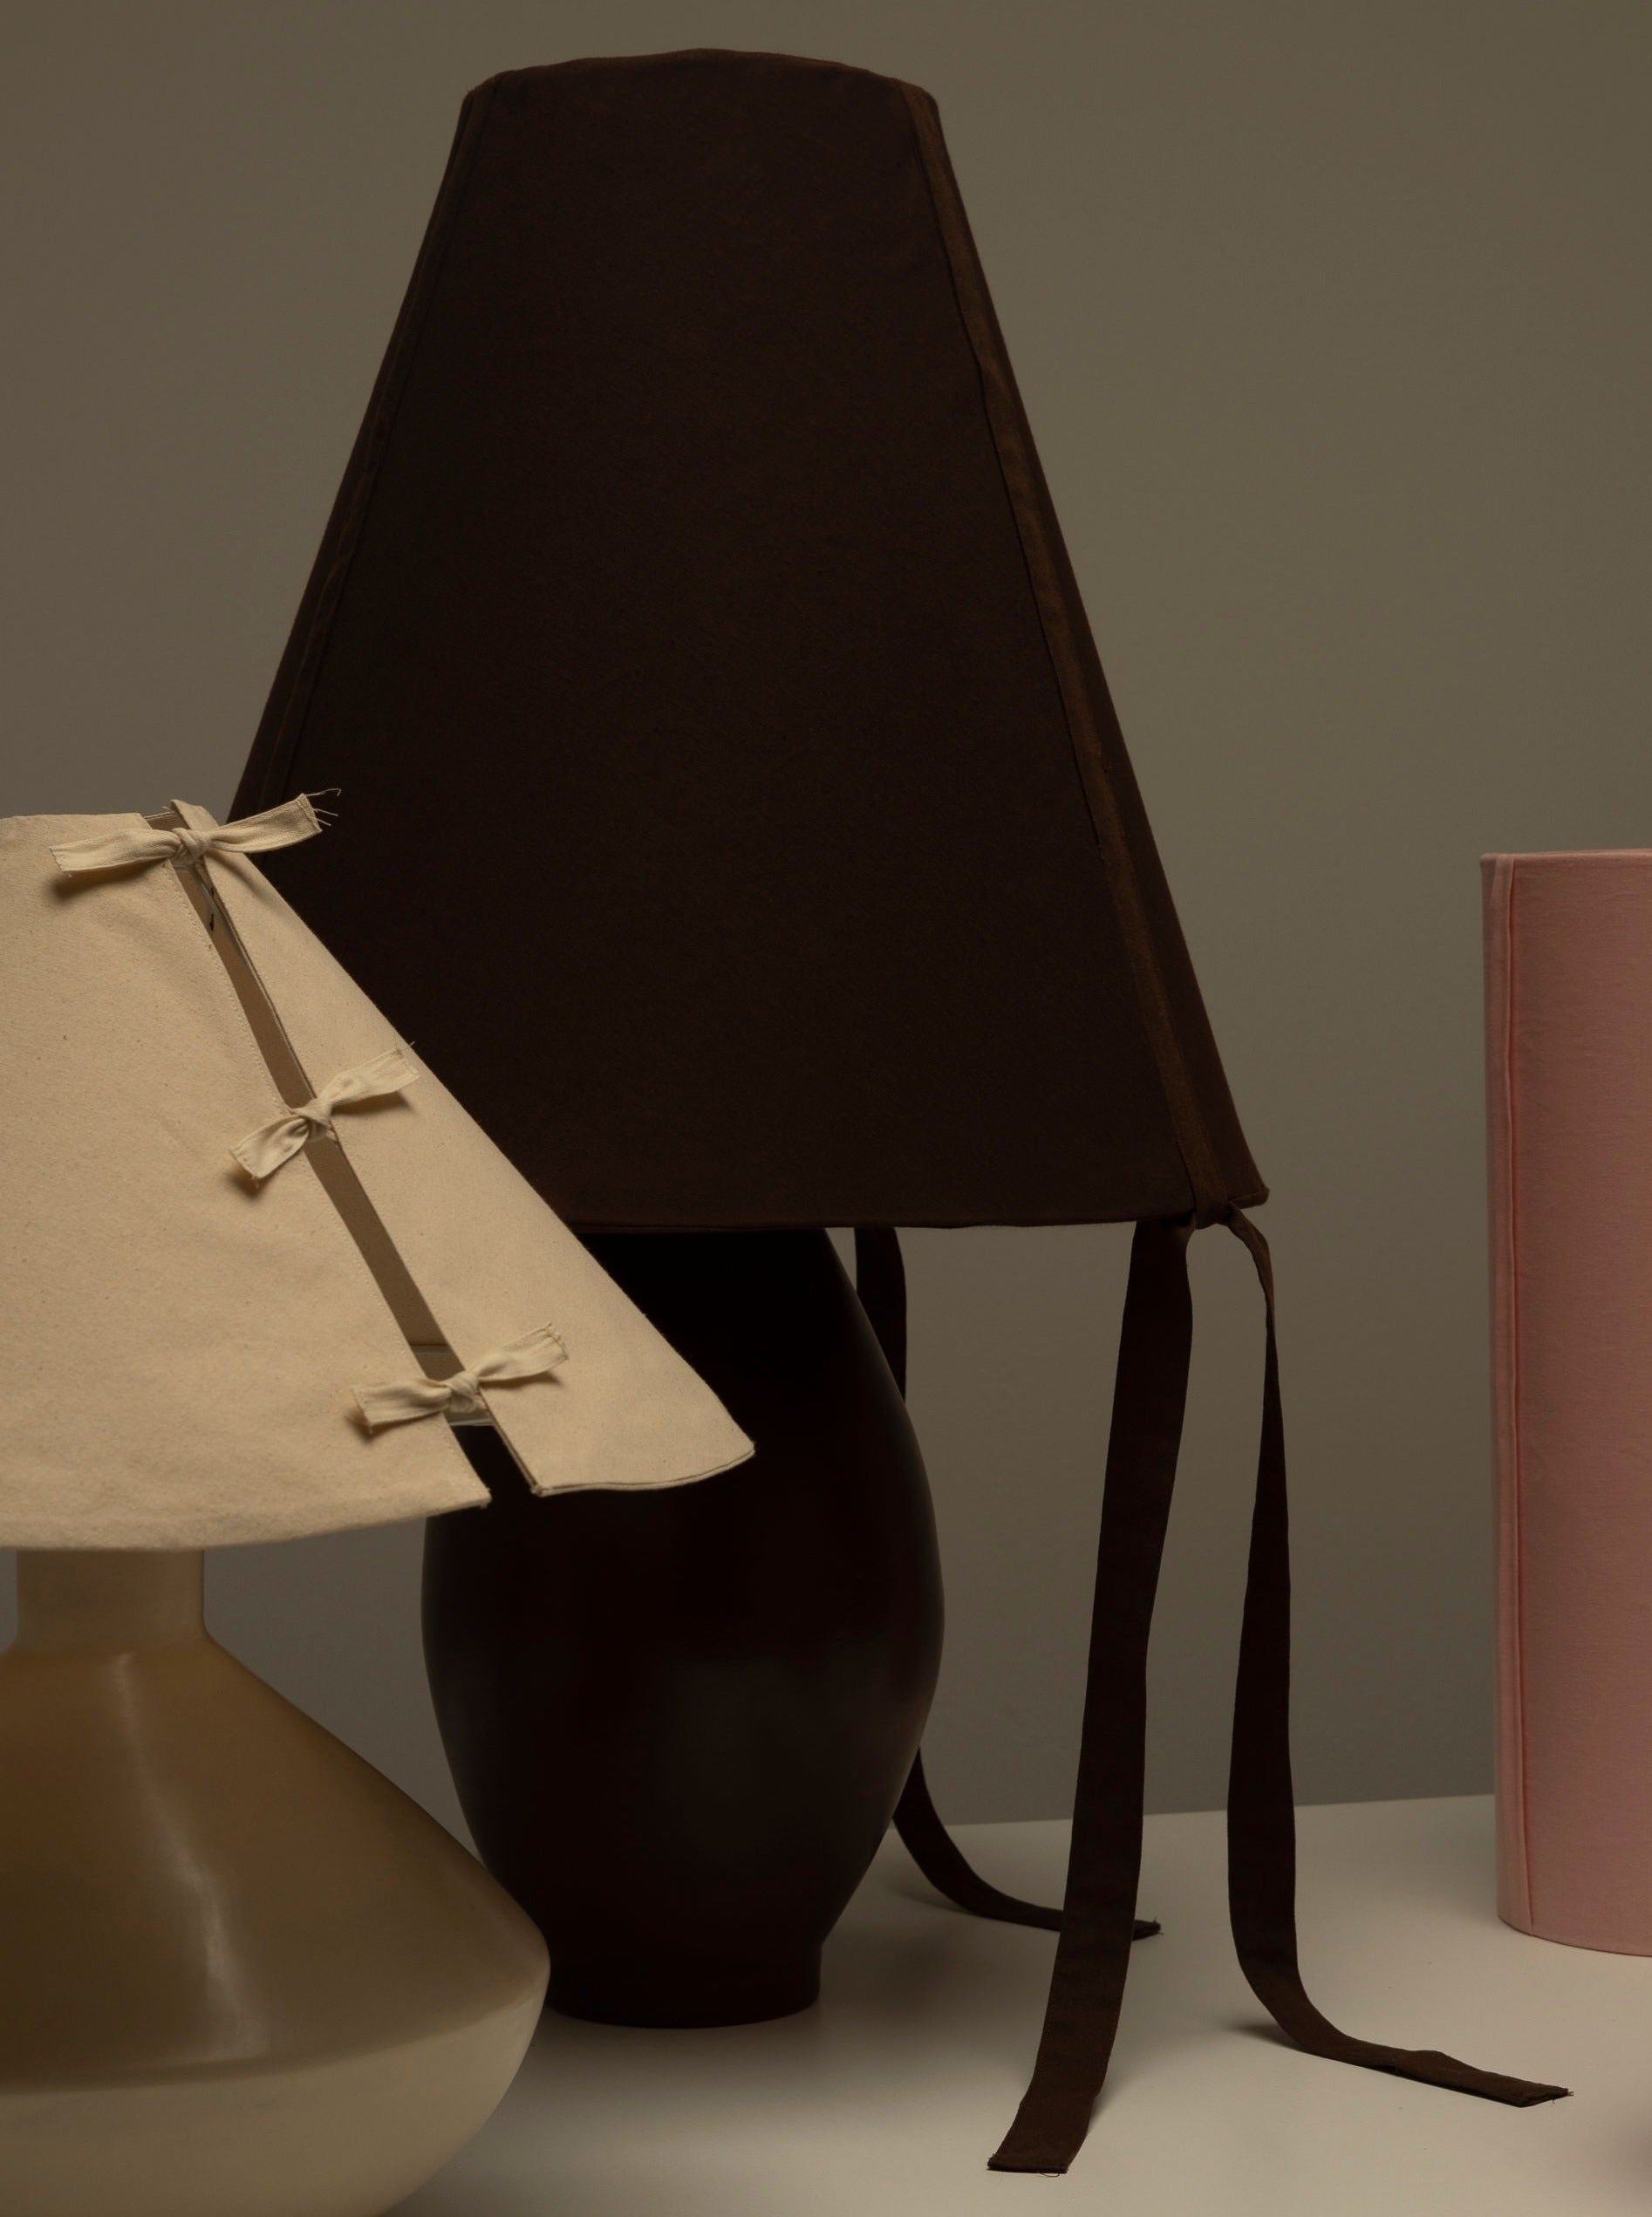 Elegant-brown-ceramic-lamp-perfect-for-ambient-lighting